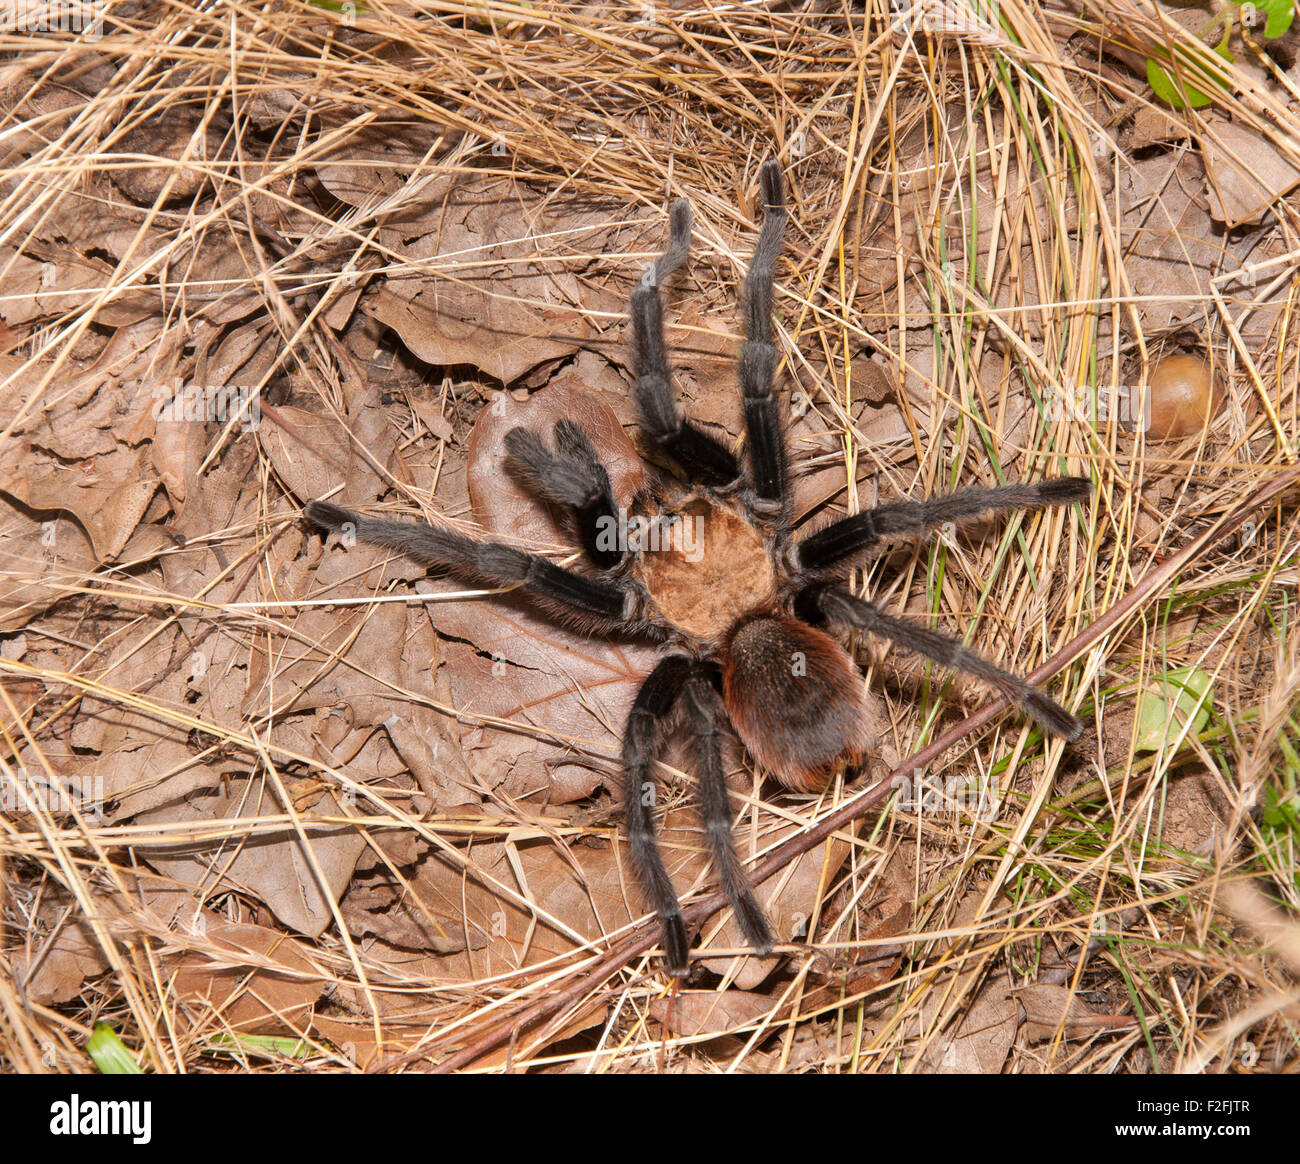 Oklahoma Brown tarantula in its native habitat Stock Photo